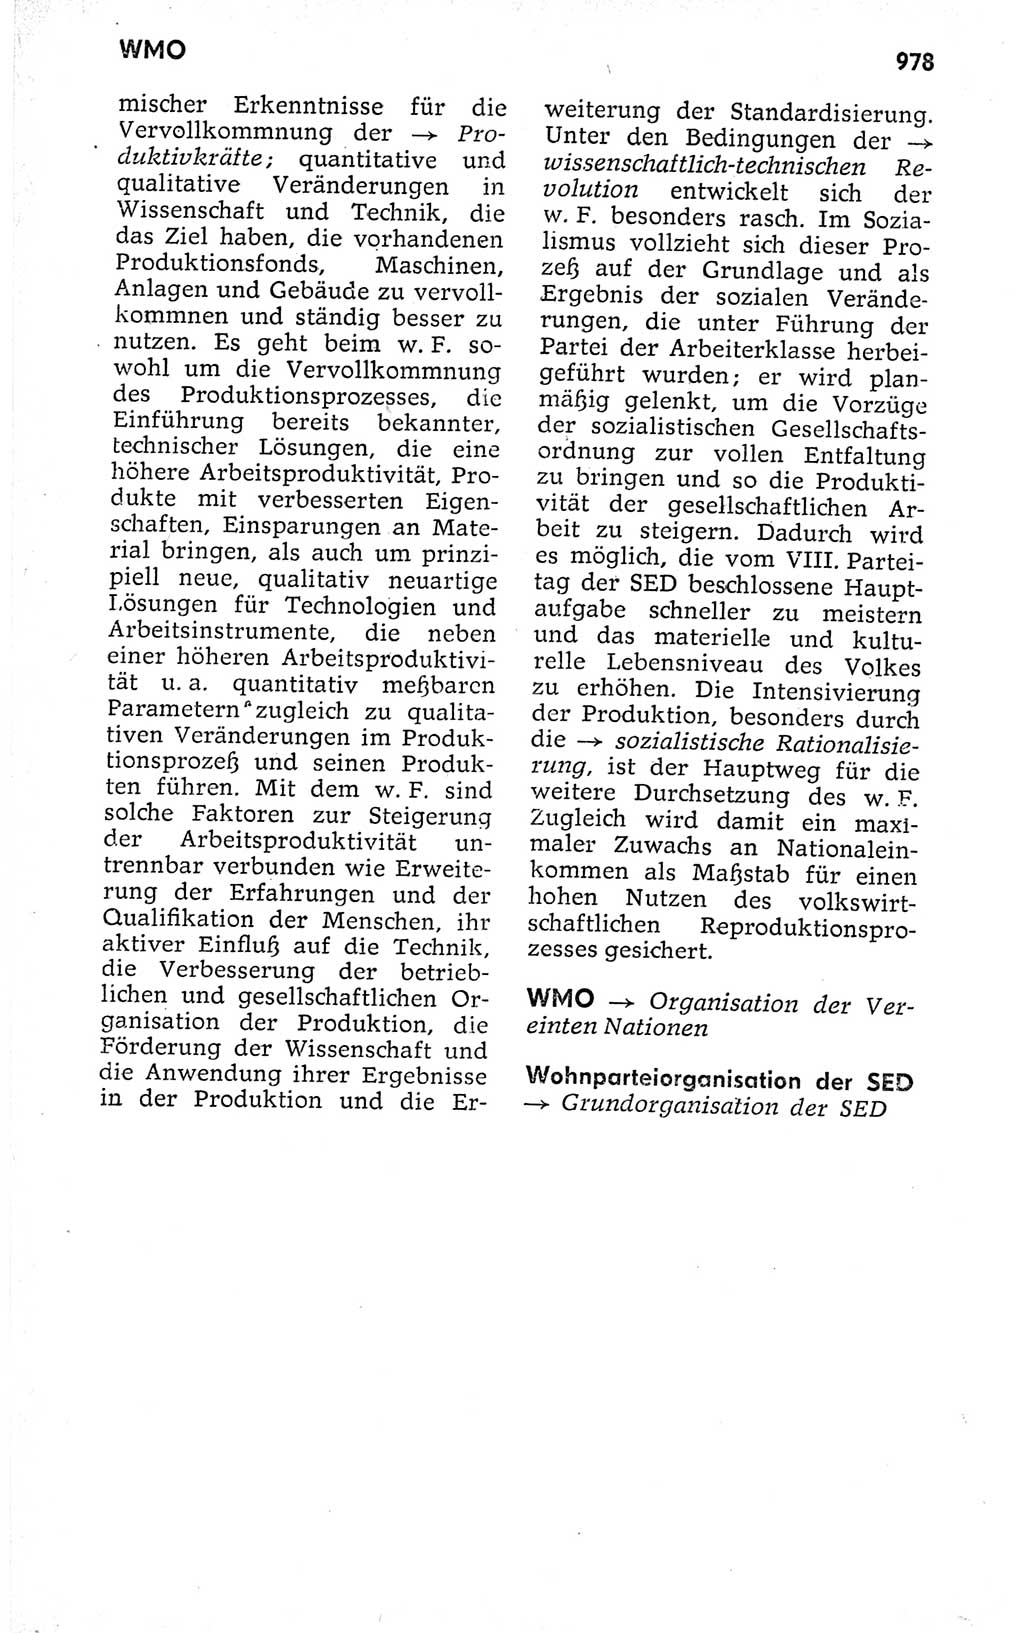 Kleines politisches Wörterbuch [Deutsche Demokratische Republik (DDR)] 1973, Seite 978 (Kl. pol. Wb. DDR 1973, S. 978)